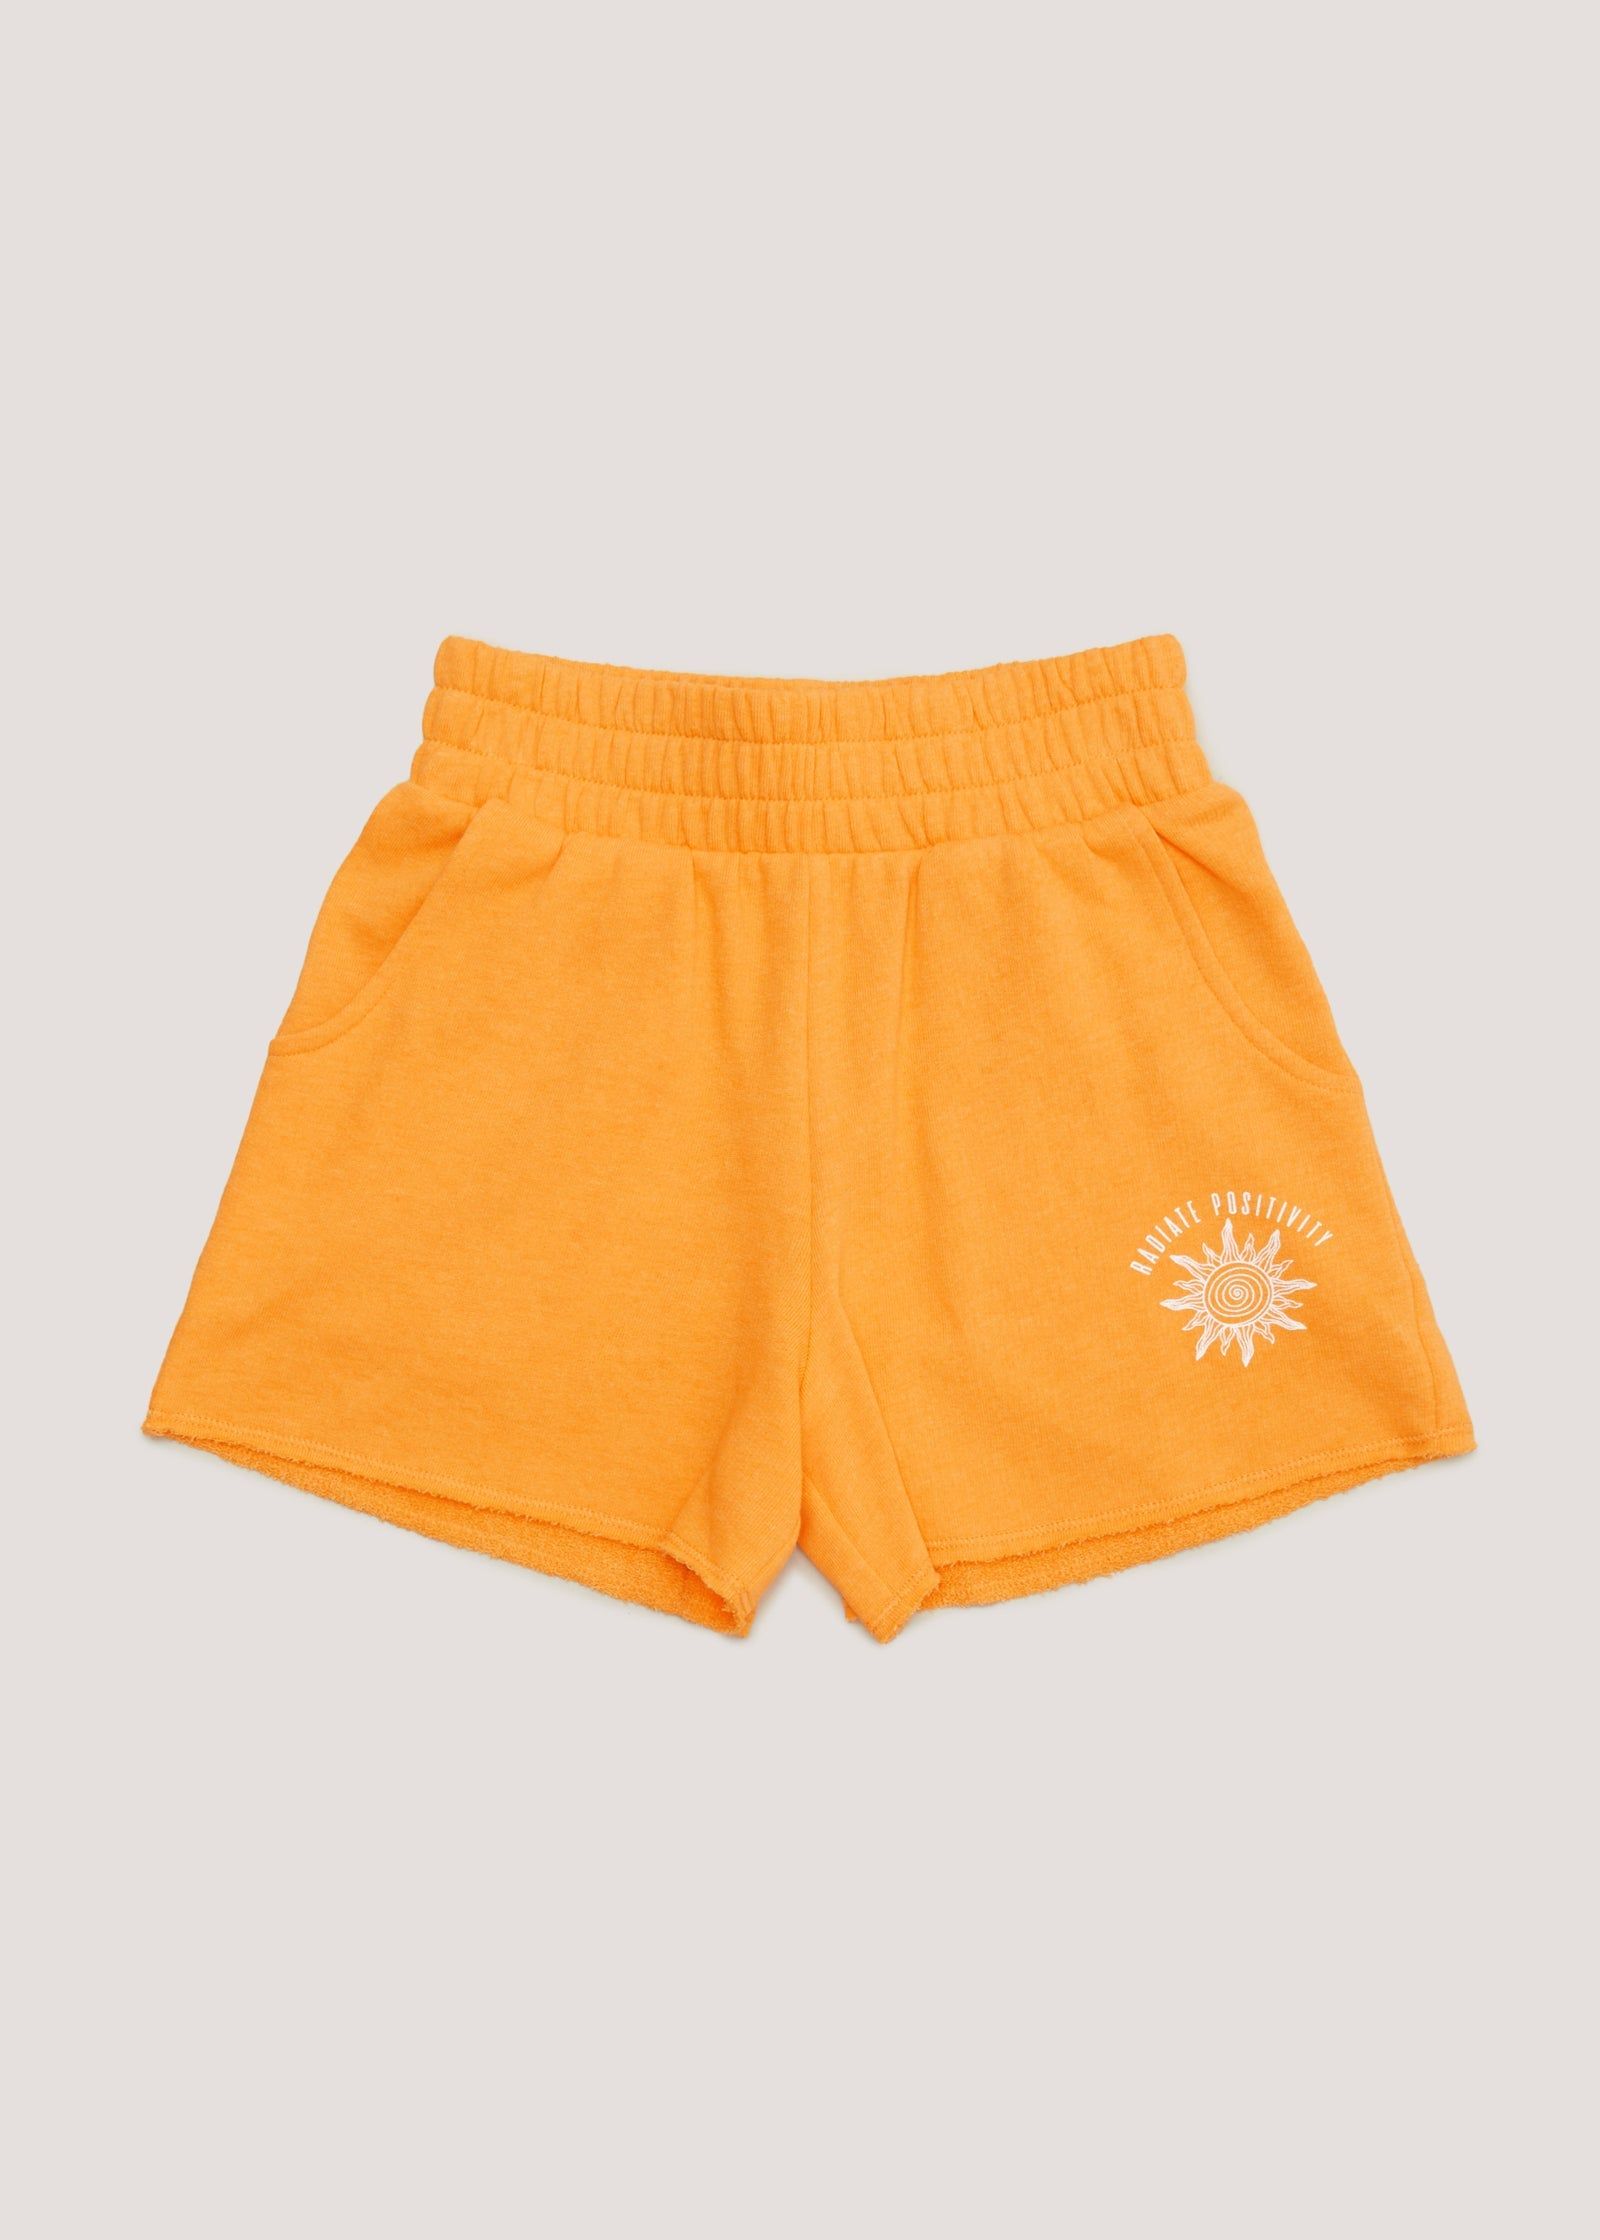 Buy Girls Candy Couture Orange Boxer Shorts (9-16yrs) in Jordan - bfab